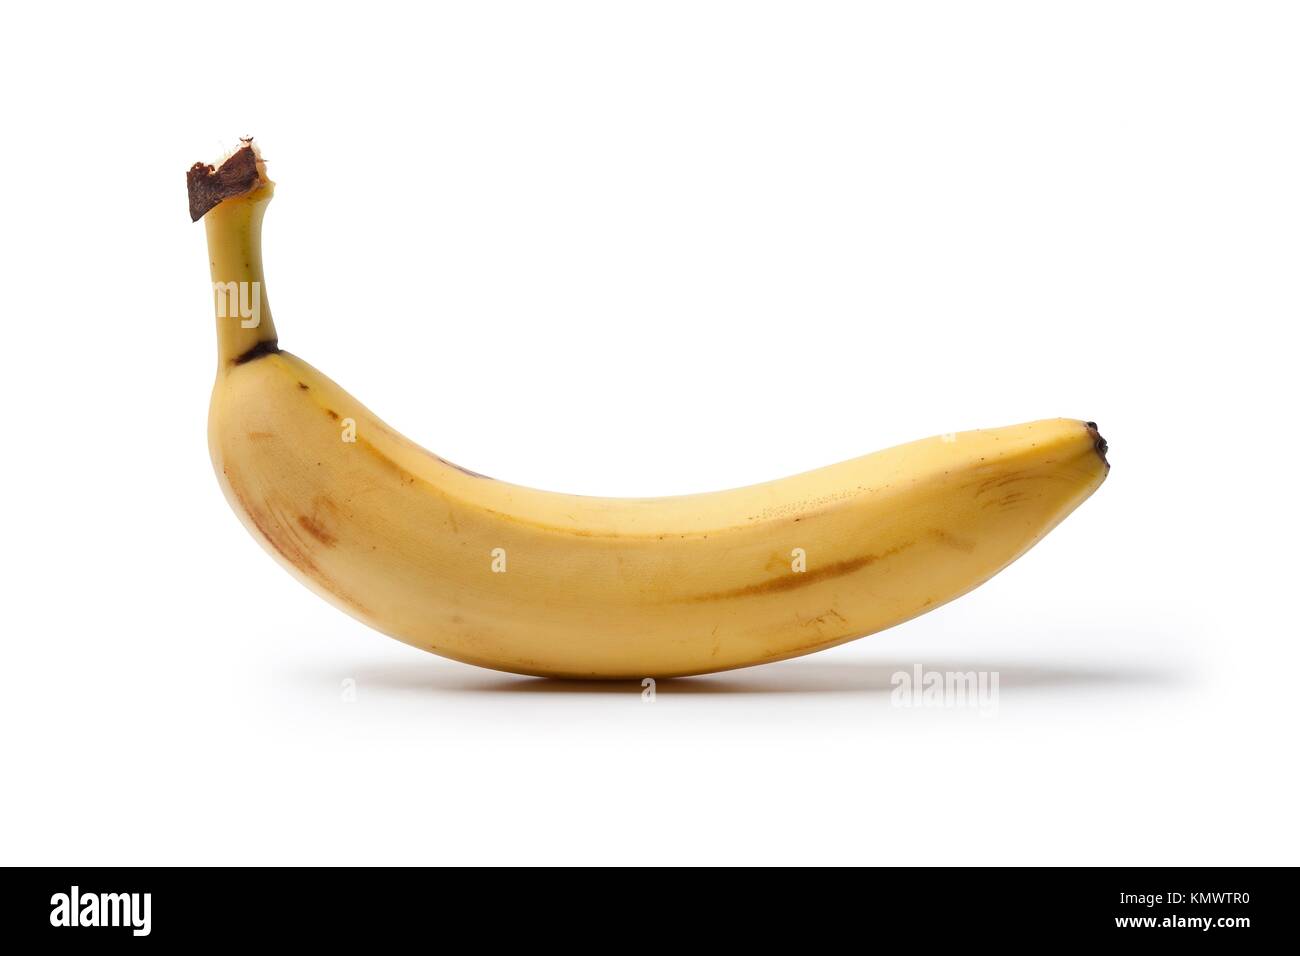 One whole unpeeled banana on white background Stock Photo